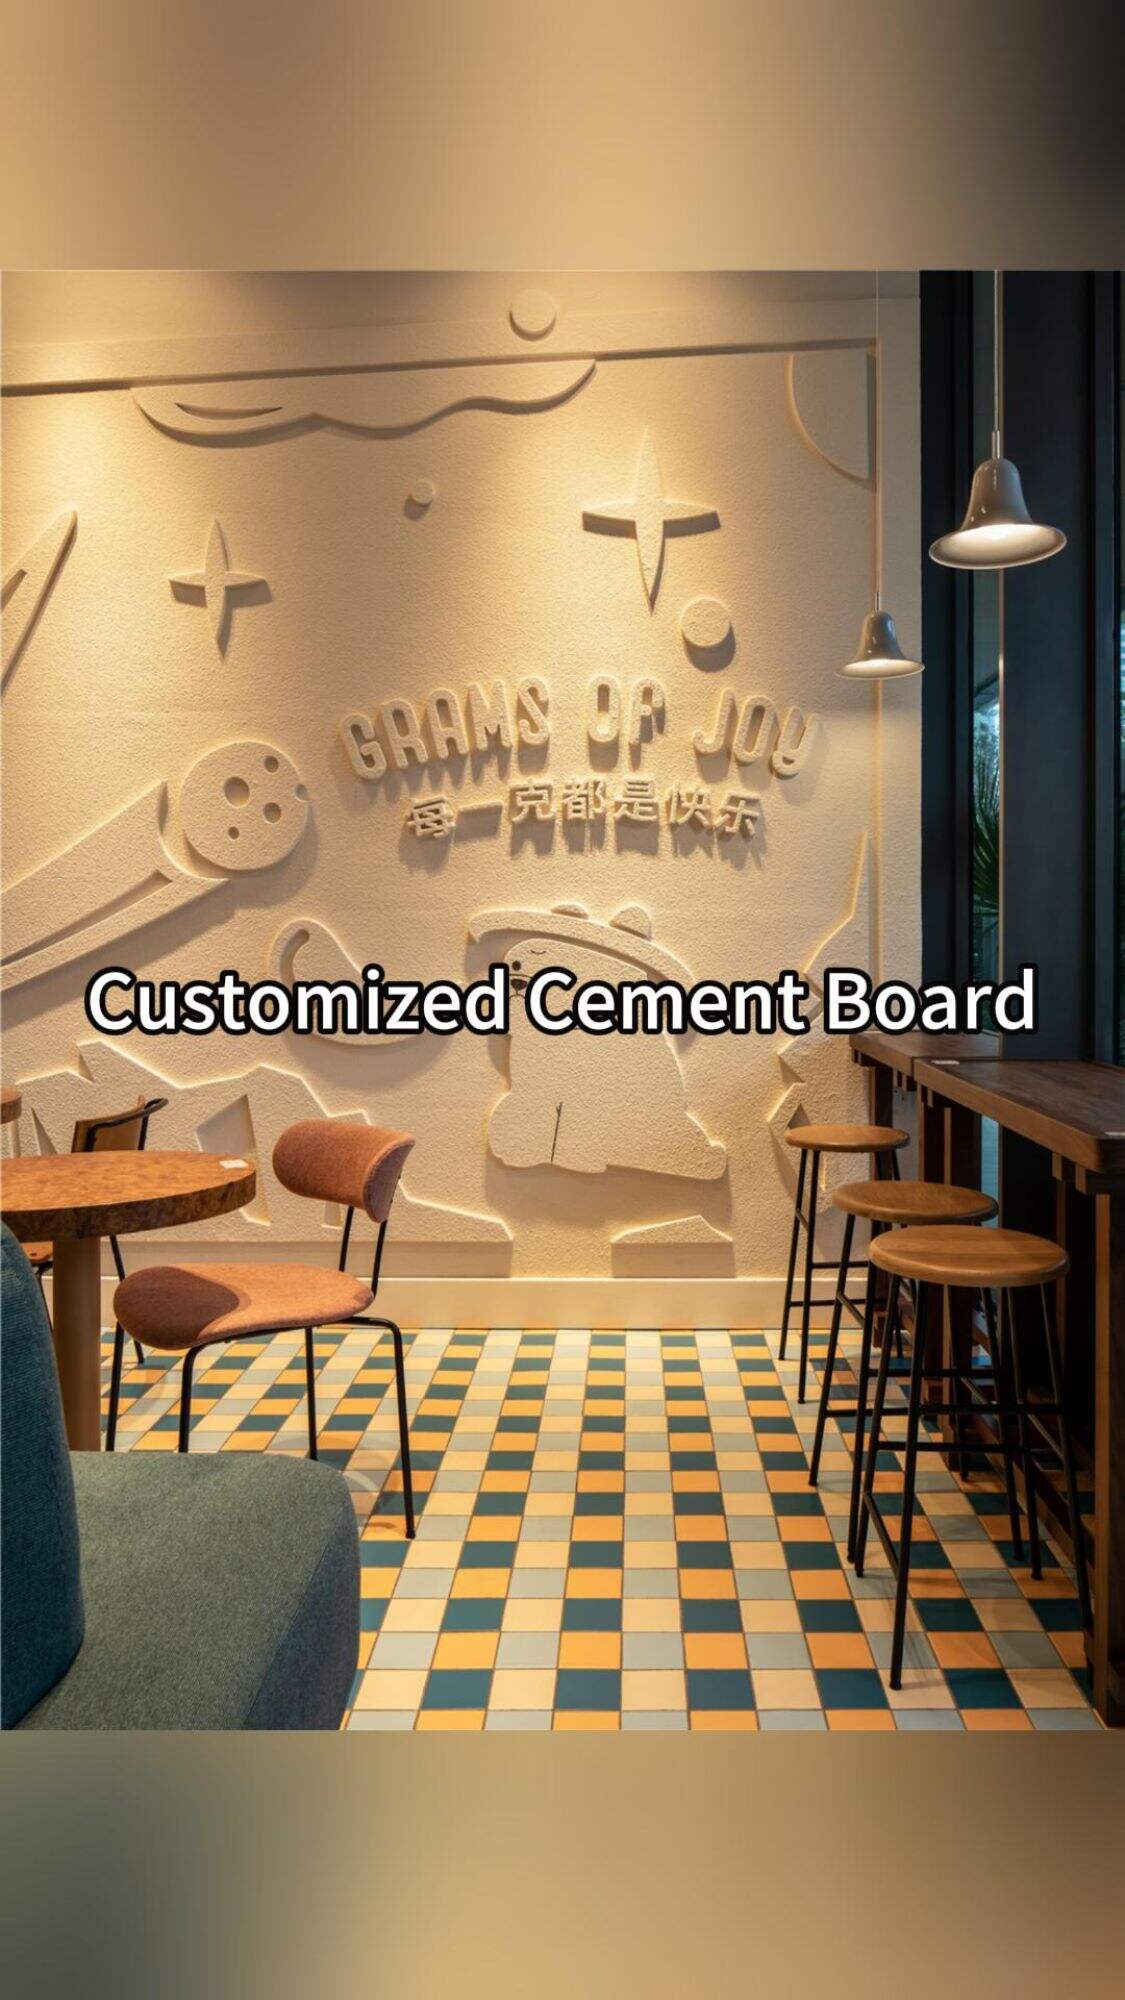 new cement design idea | customized cement board